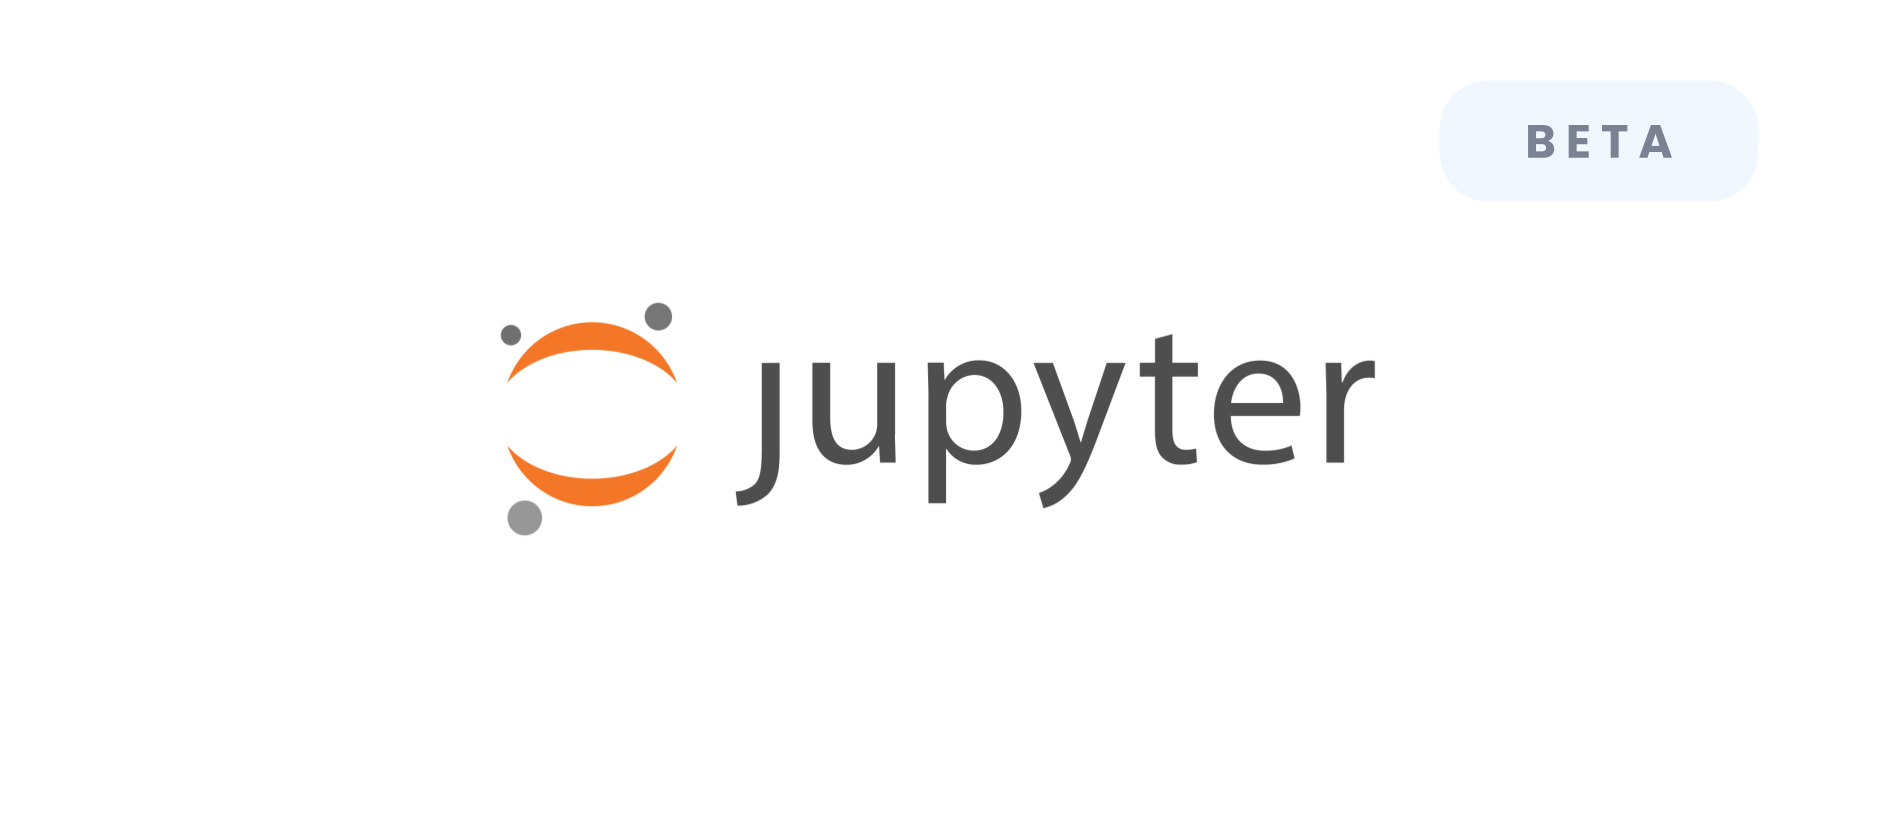 Machine Learning - jupyter - Beta